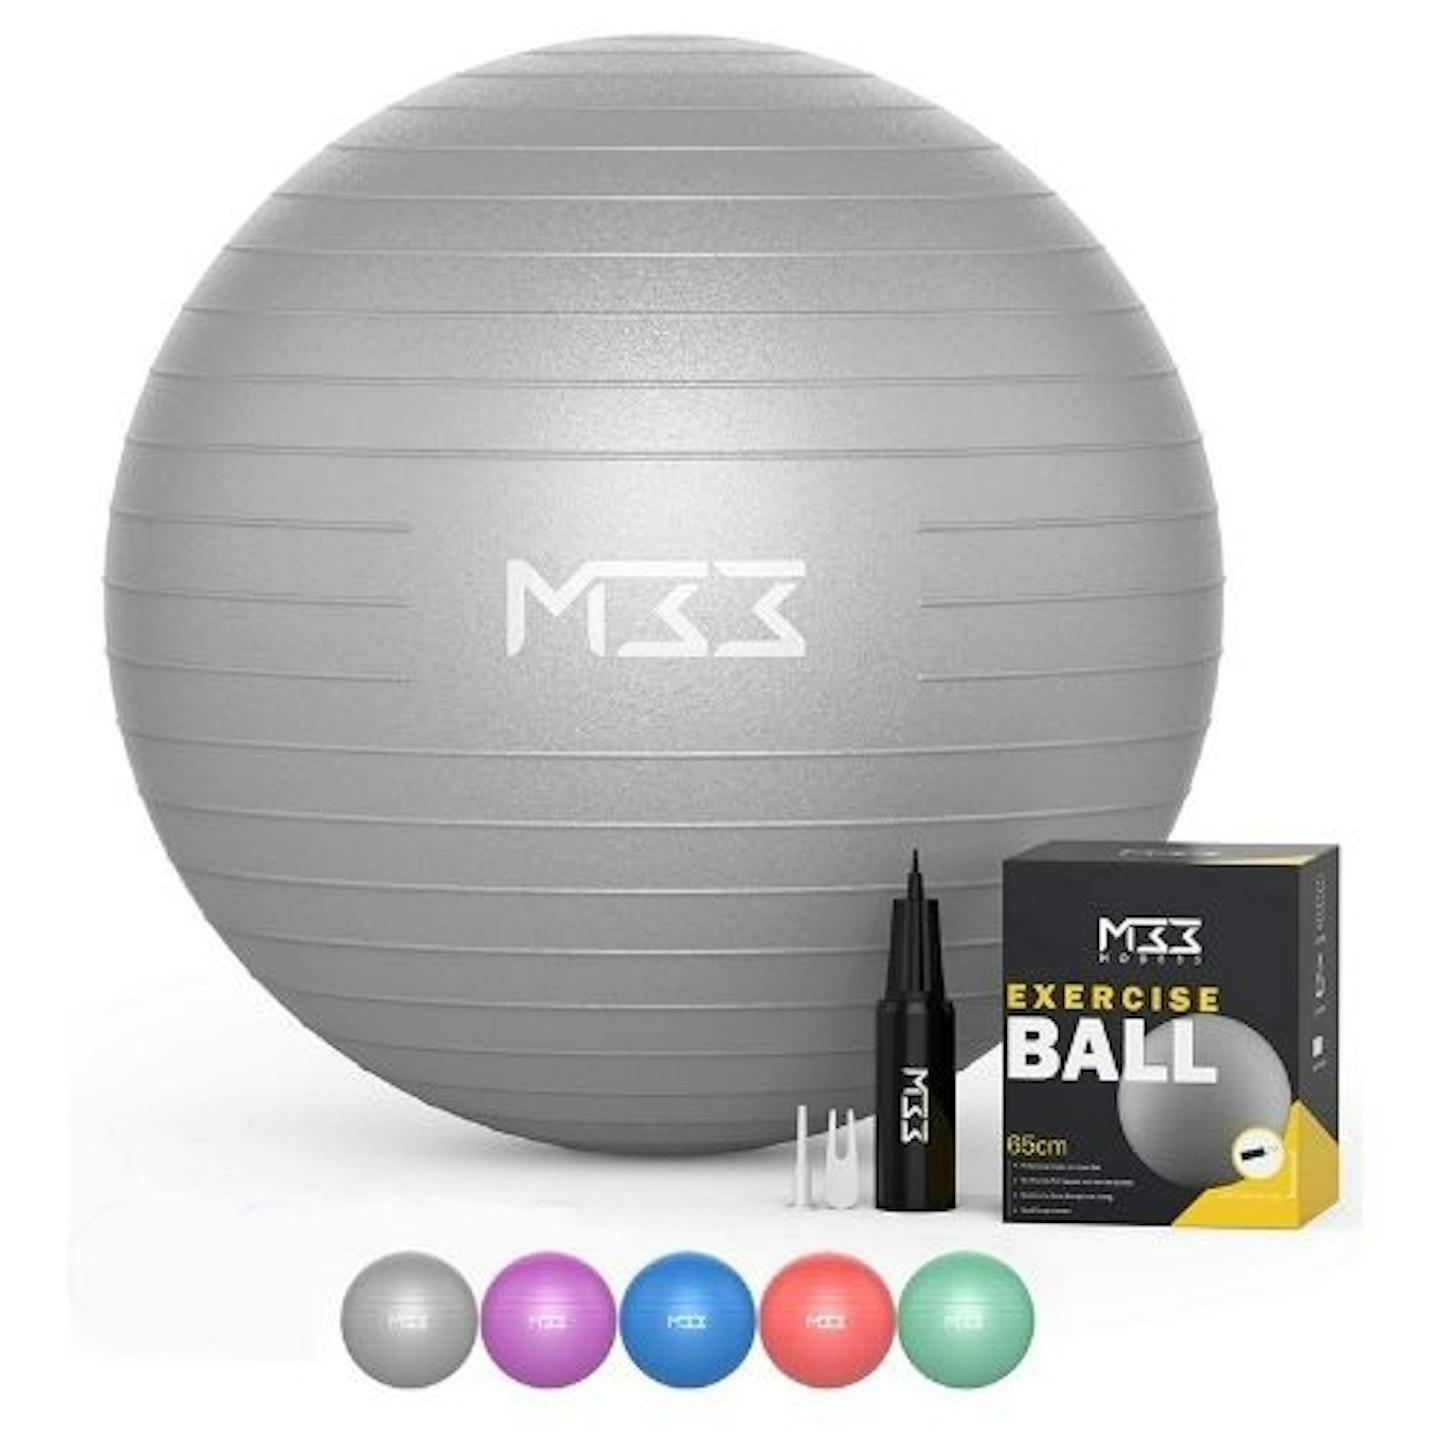 Mode33 Exercise Ball